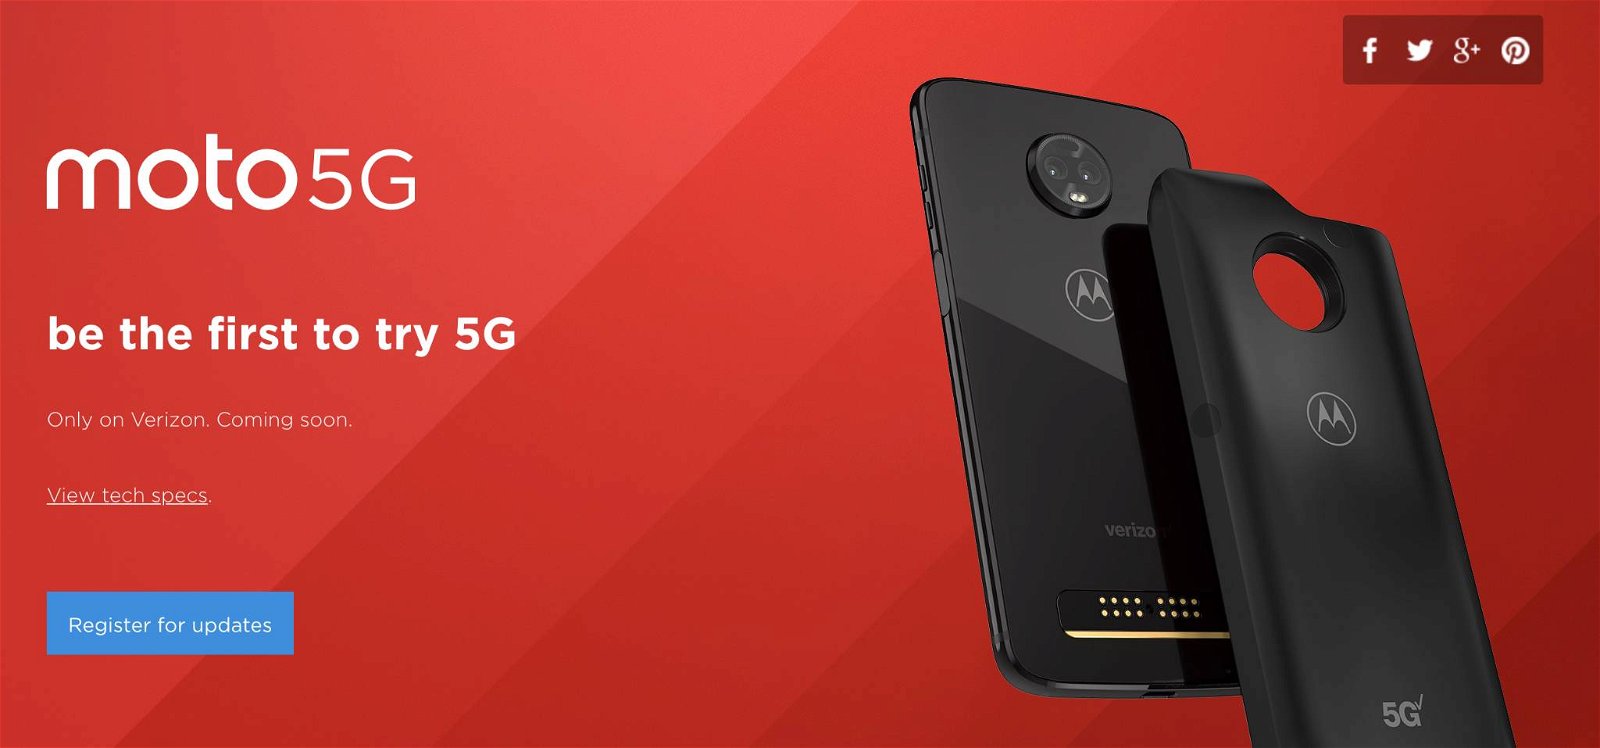 Immagine di Moto Z3, ecco il primo smartphone con 5G opzionale